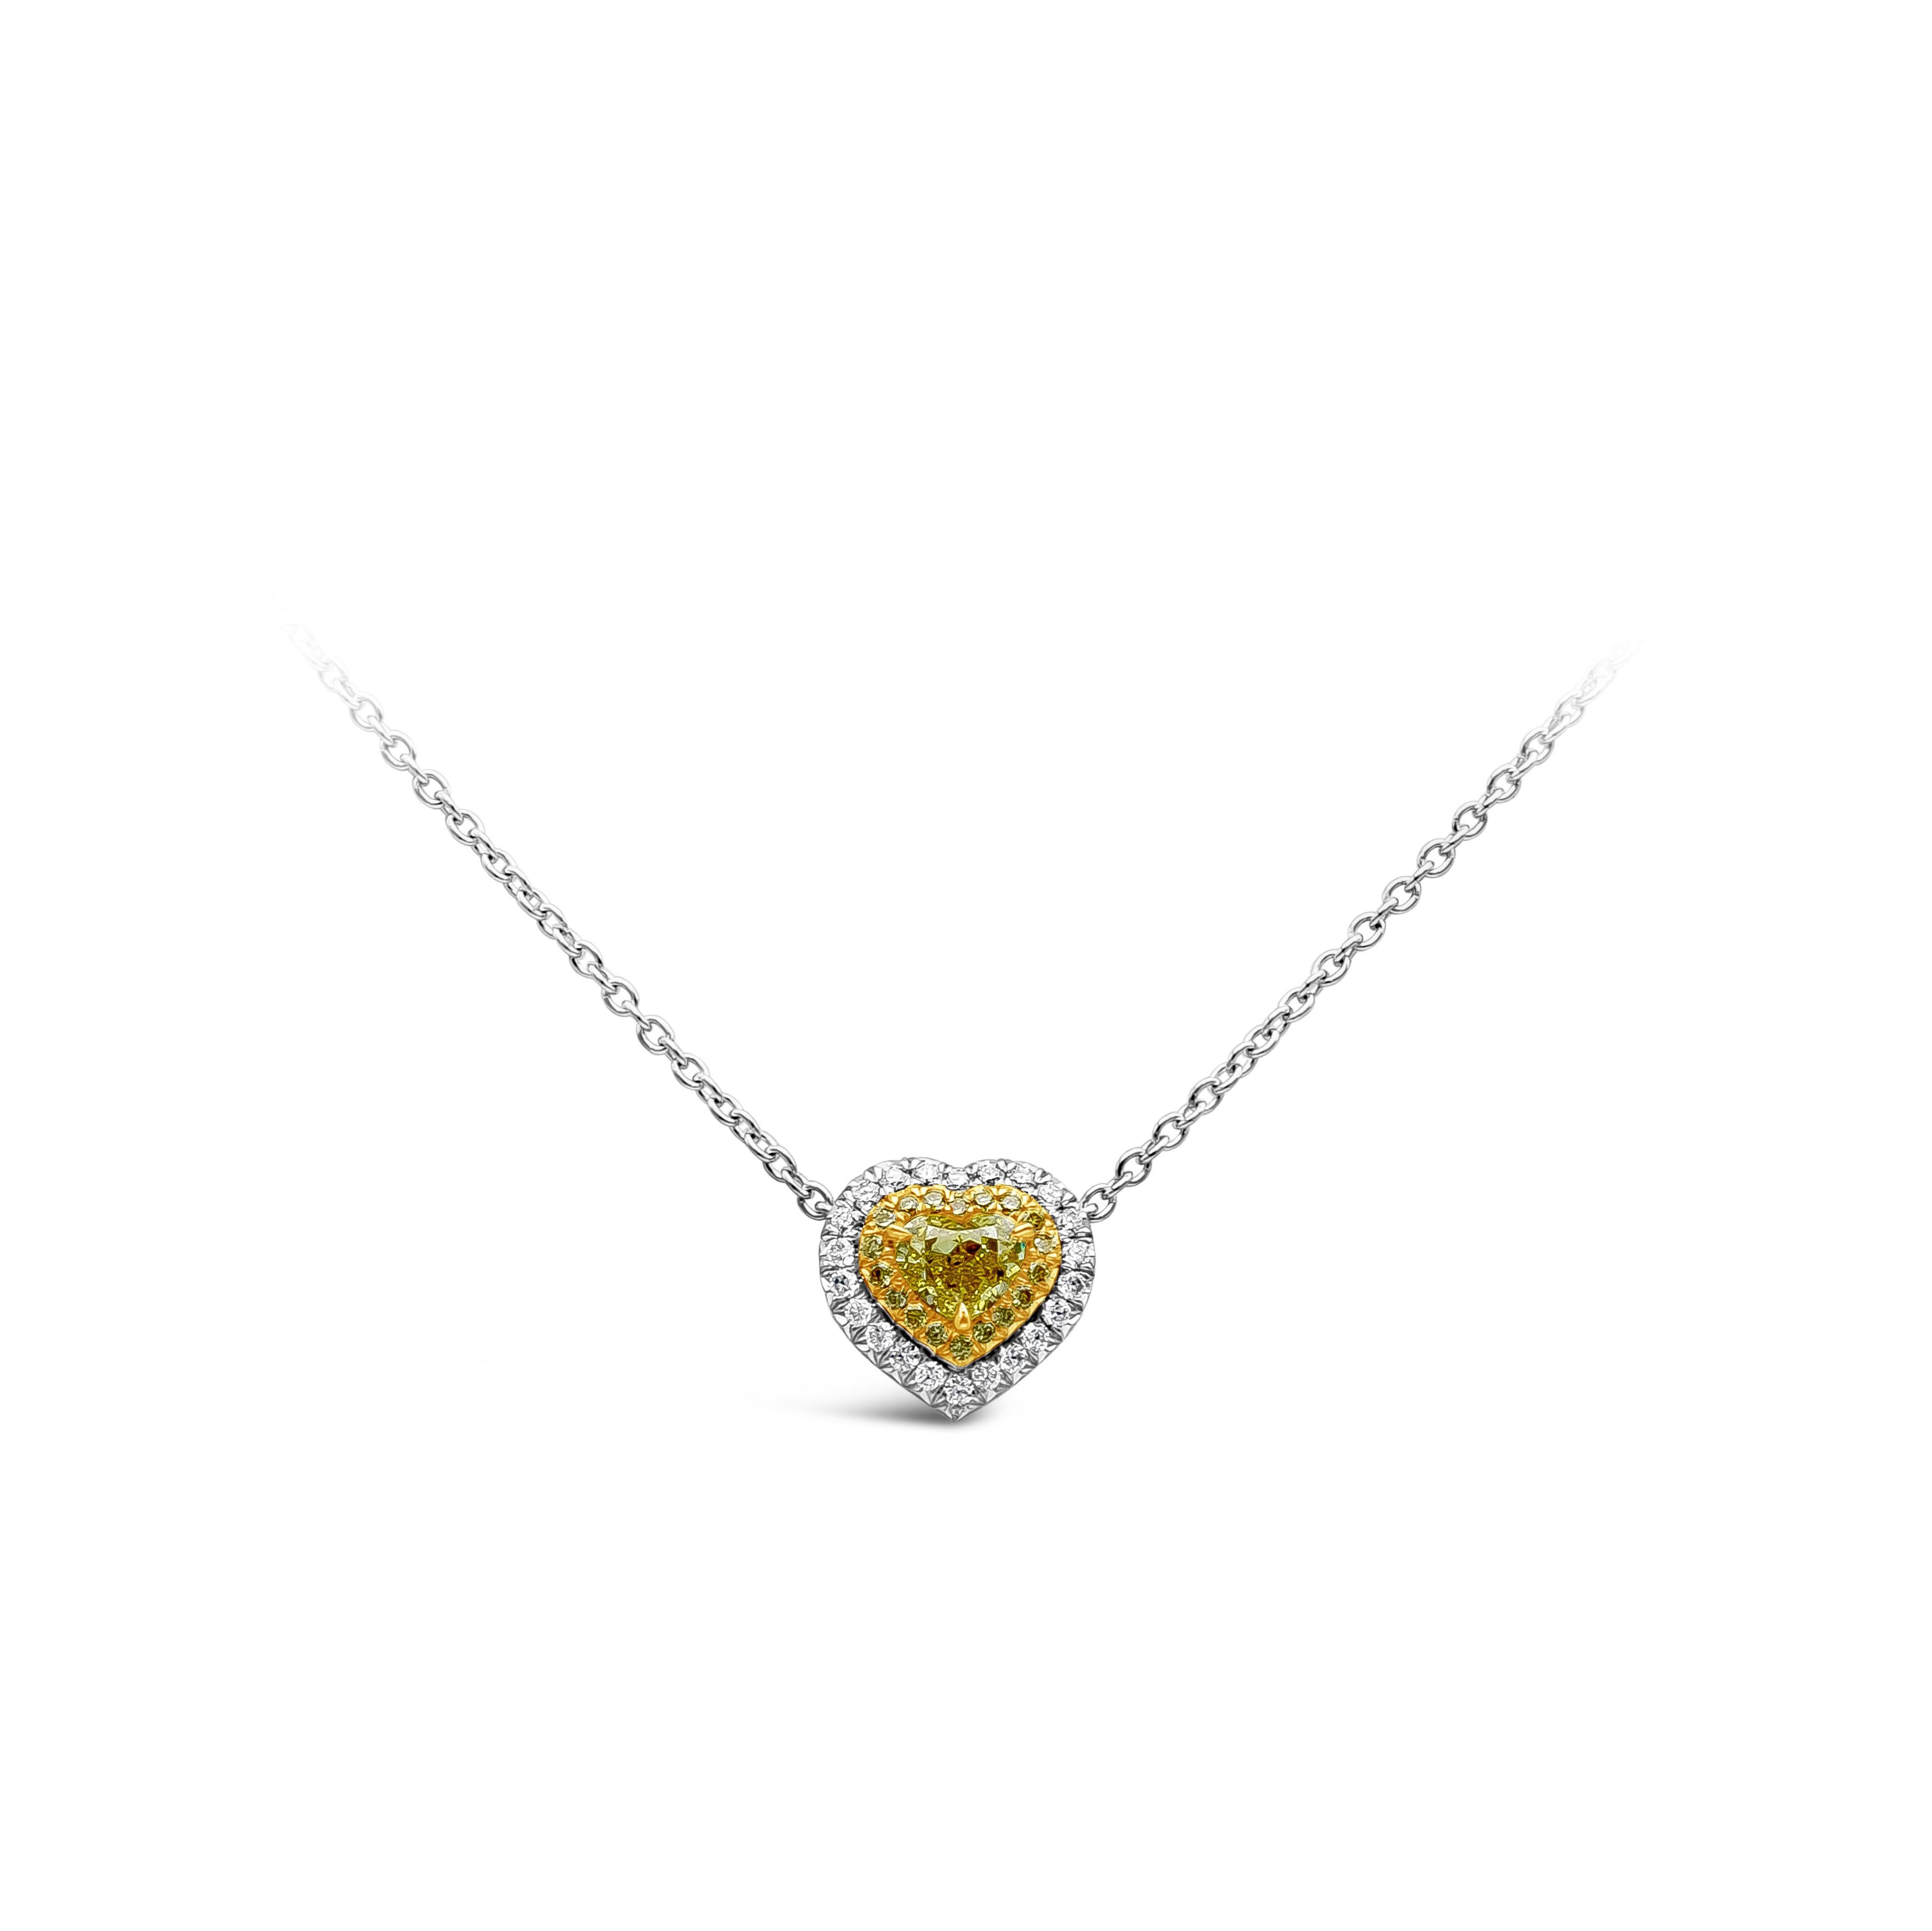 Ce magnifique pendentif est orné d'un diamant jaune en forme de cœur pesant 0,50 carats et d'une pureté VS. Elle est rehaussée d'une rangée de 40 diamants ronds de taille brillant, respectivement 18 diamants ronds jaunes et 22 diamants ronds blancs,